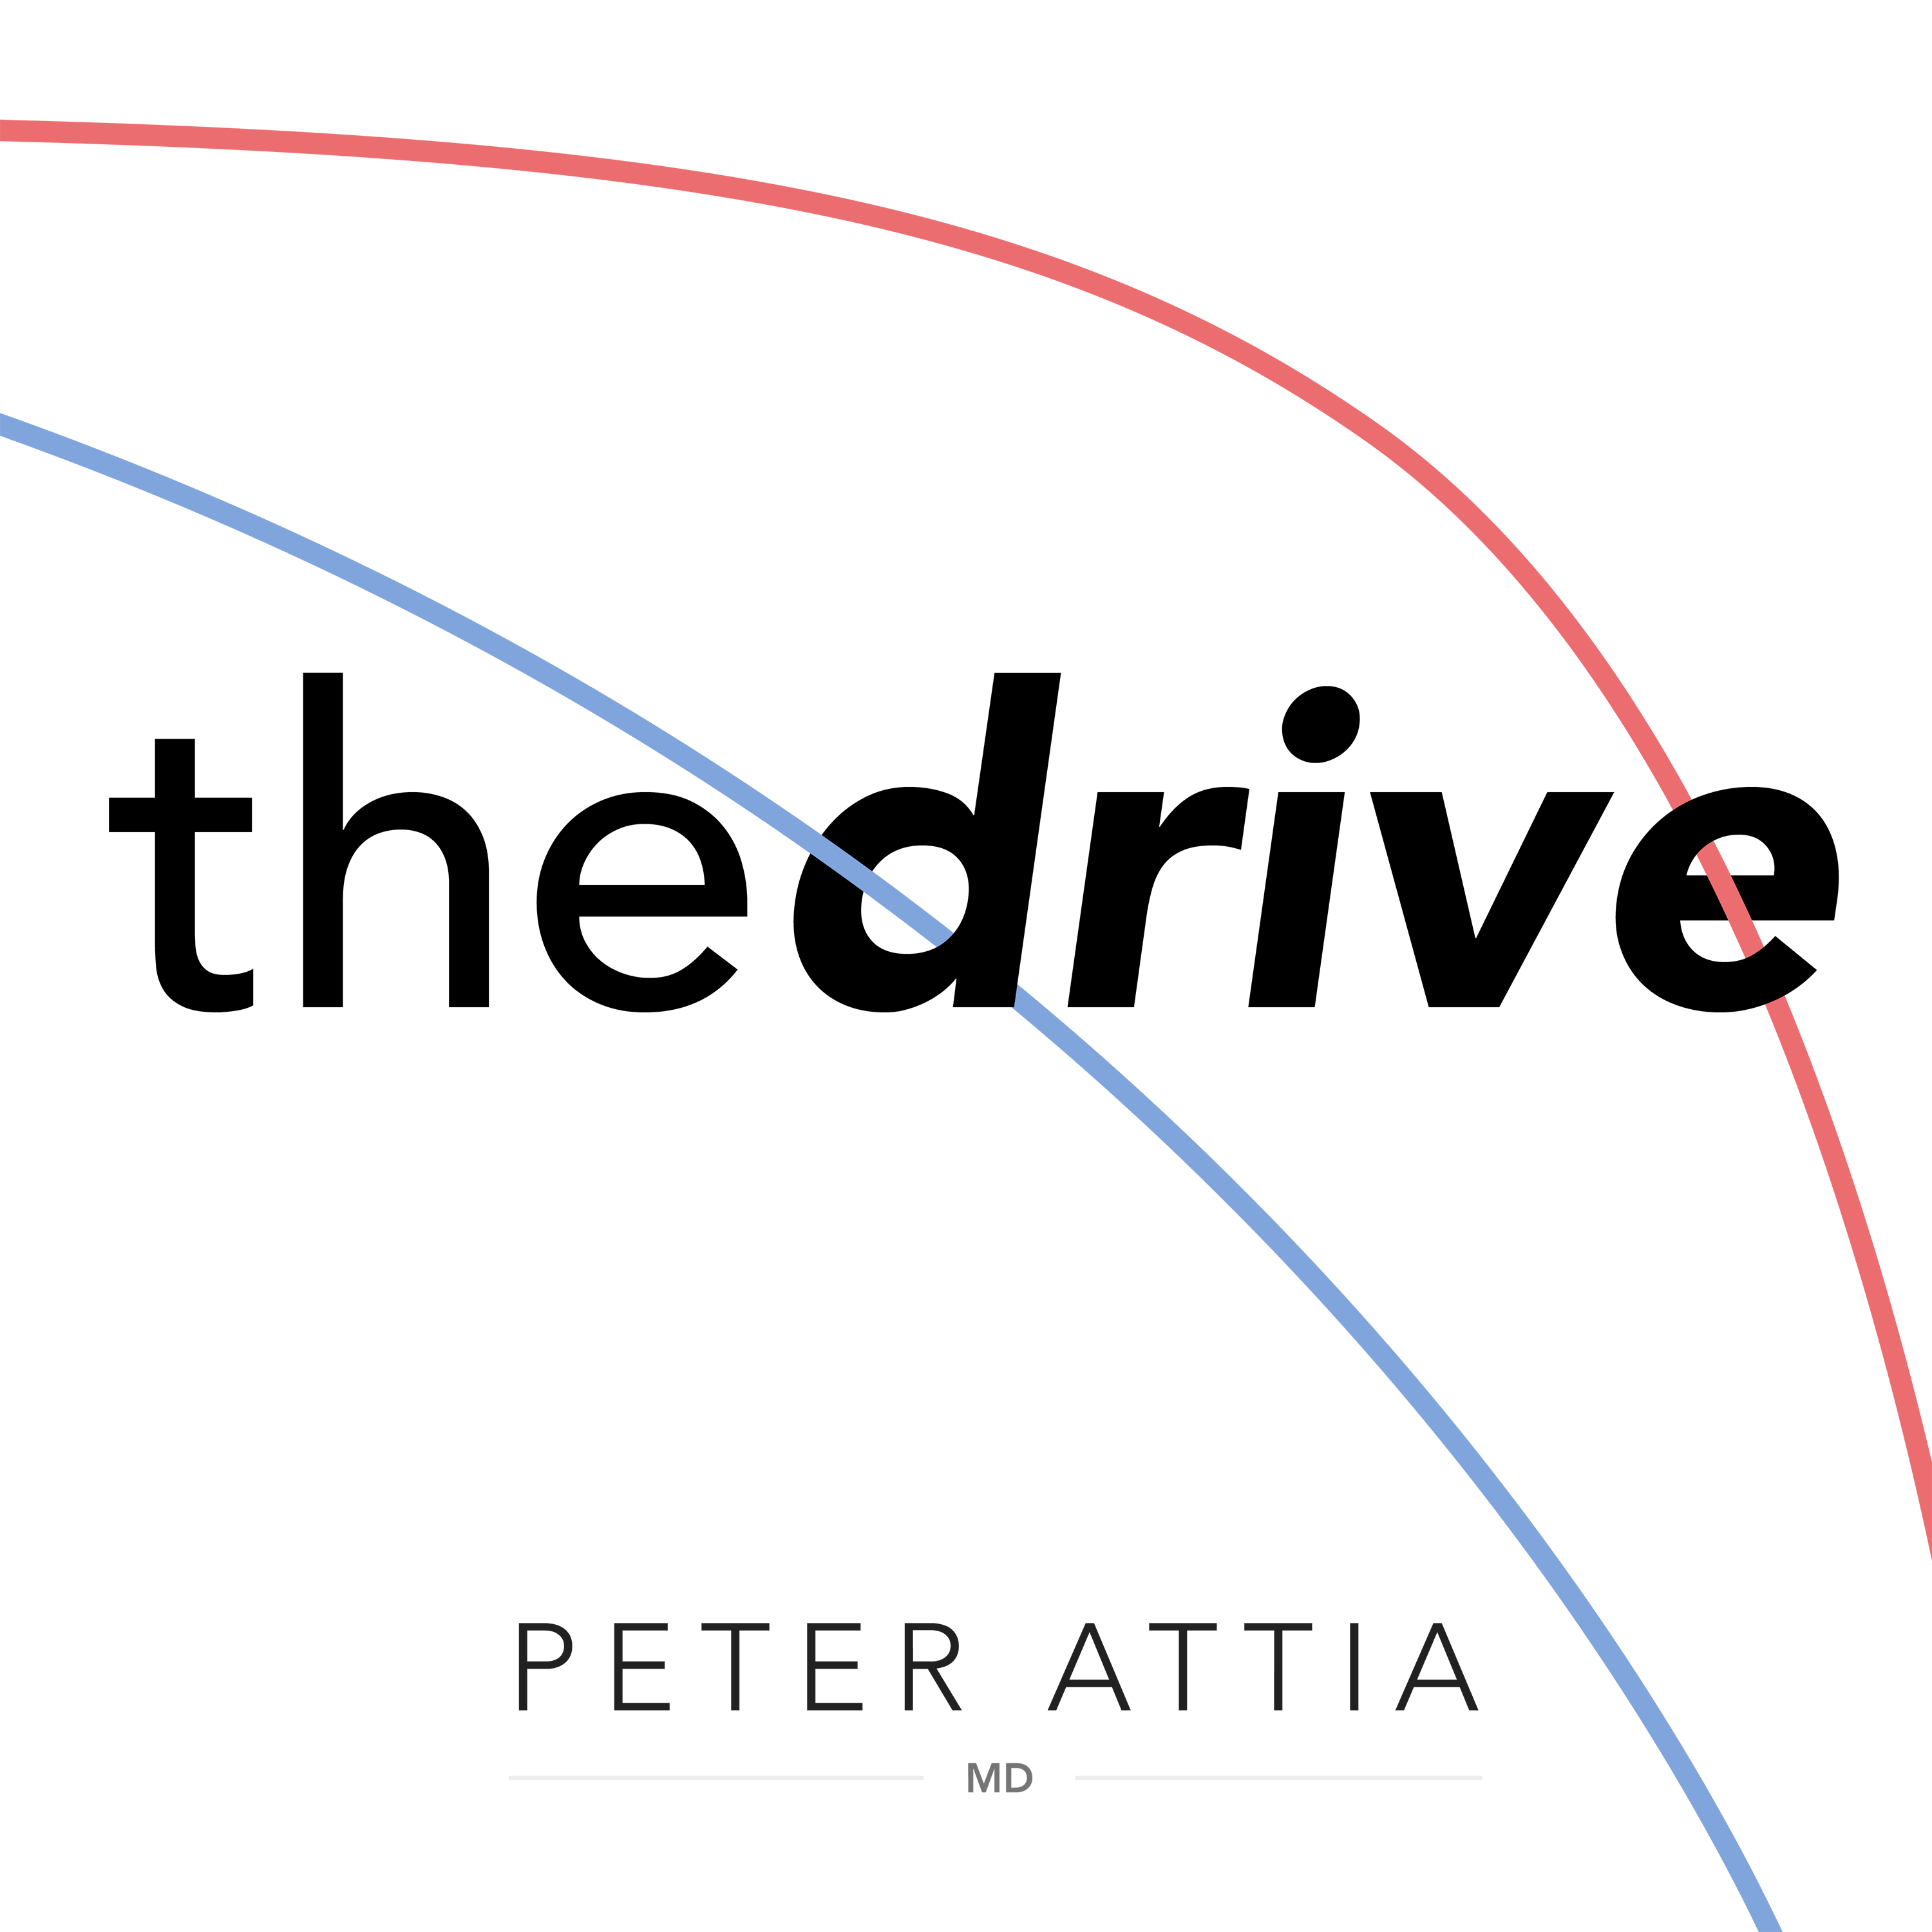 FNLA Logo - The Peter Attia Drive Podcast - Peter Attia